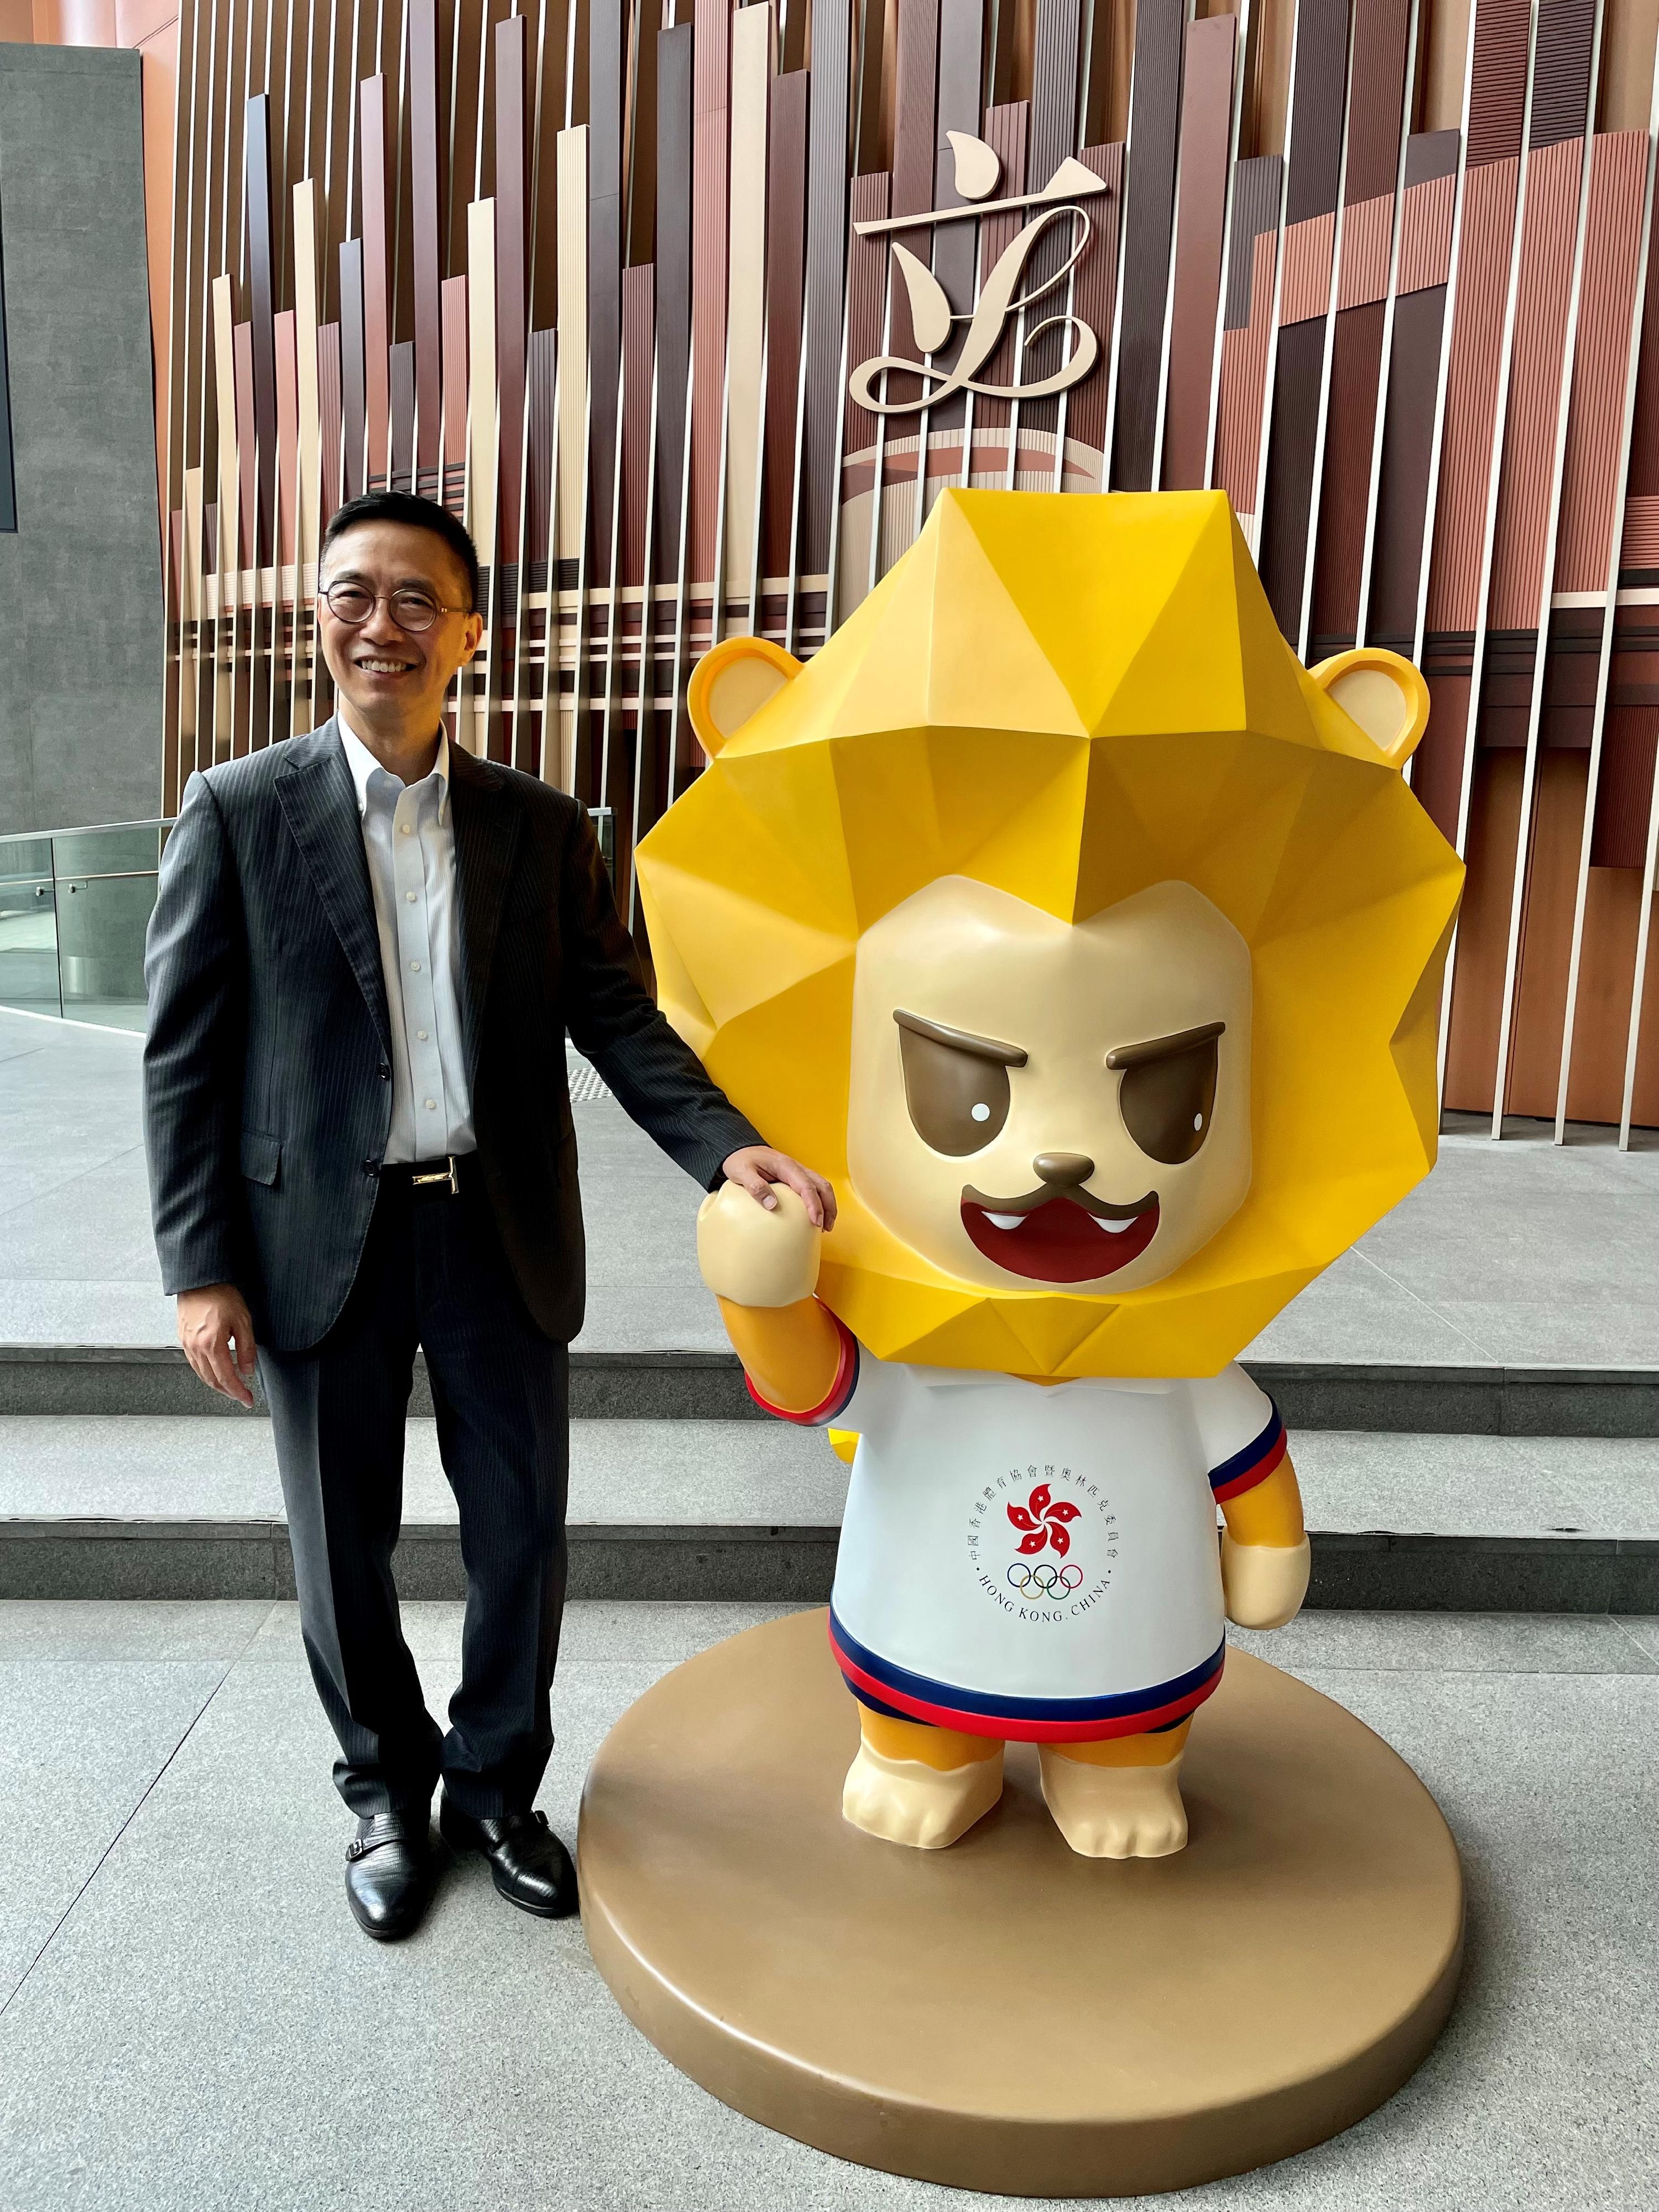 文化體育及旅遊局局長楊潤雄今日（七月五日）出席立法會為杭州2022年第十九屆亞運會的中國香港代表團舉辦的打氣活動，並與吉祥物堅仔合照。

